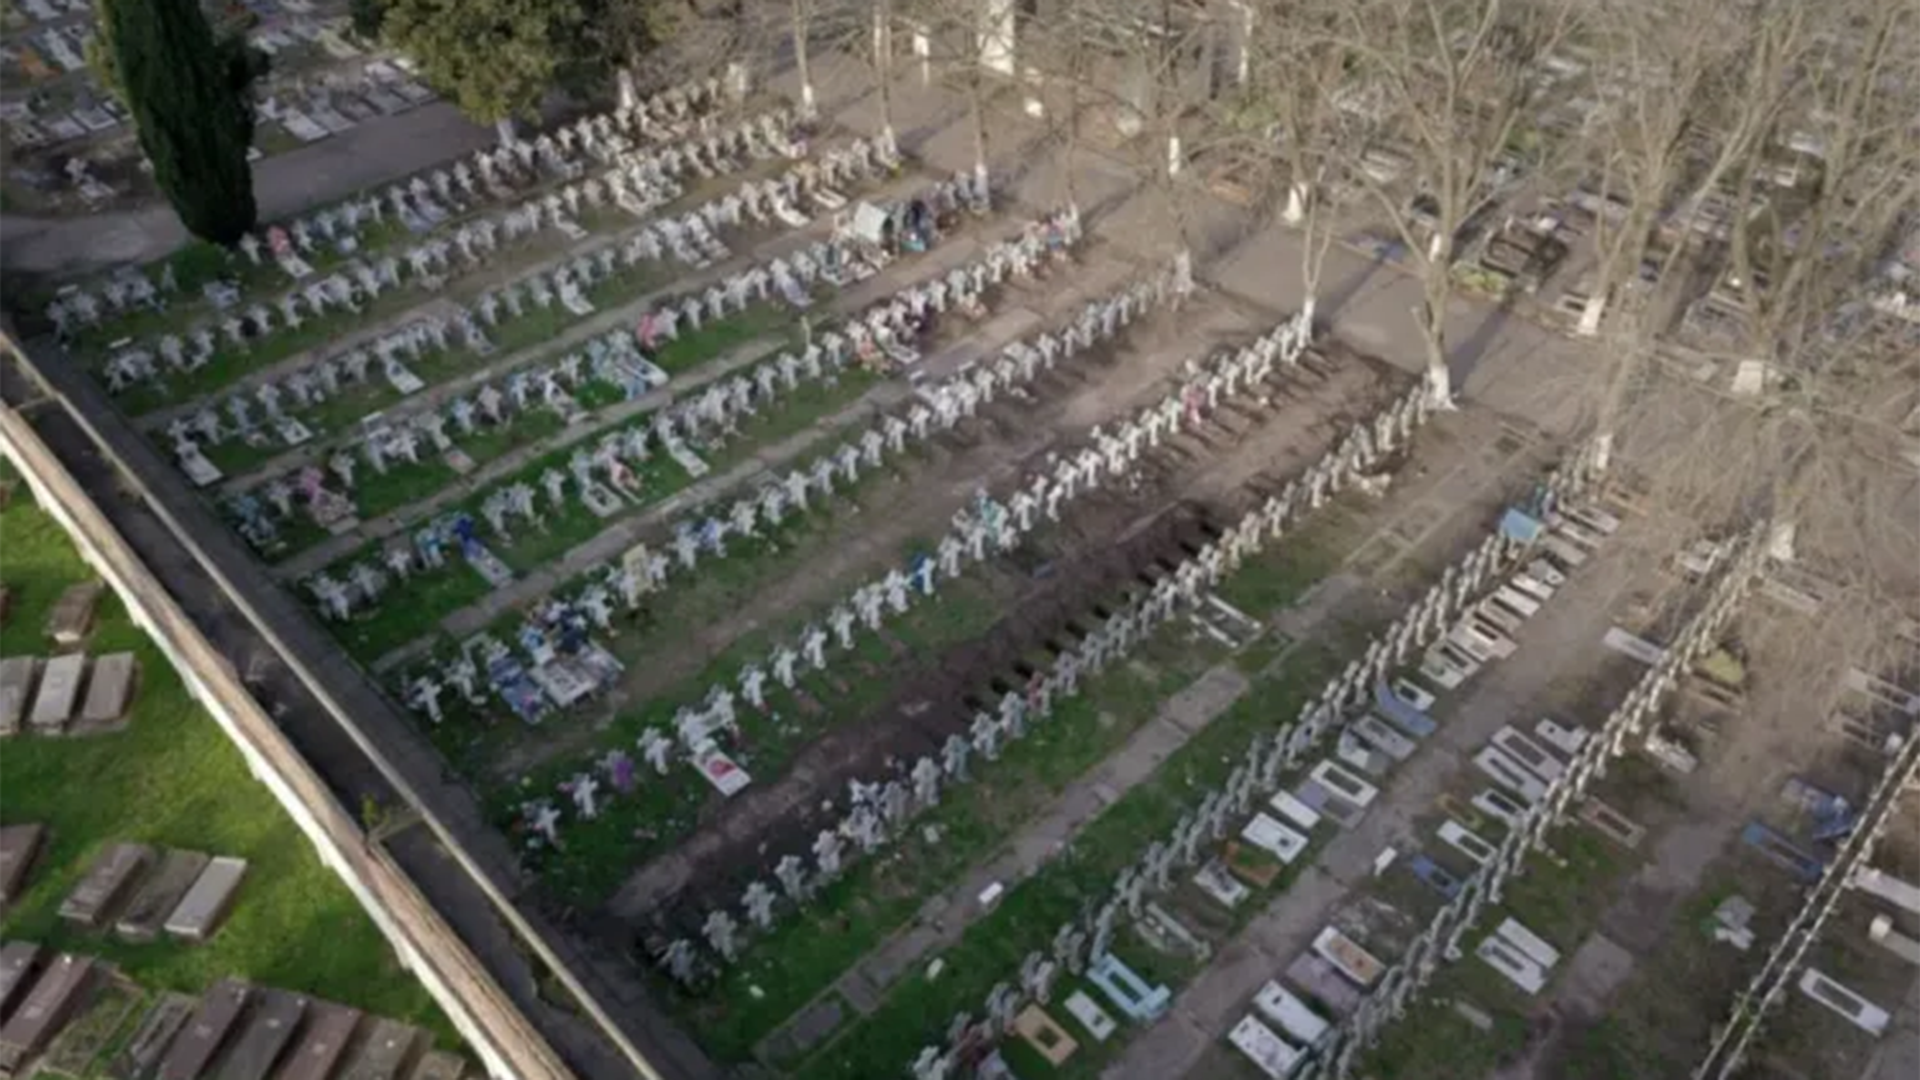 En el Cementerio Municipal de La Plata se descubrieron 66 tumbas NN. Investigan si uno de esos cuerpos es el de Jorge Julio López (InfoJudicial)
